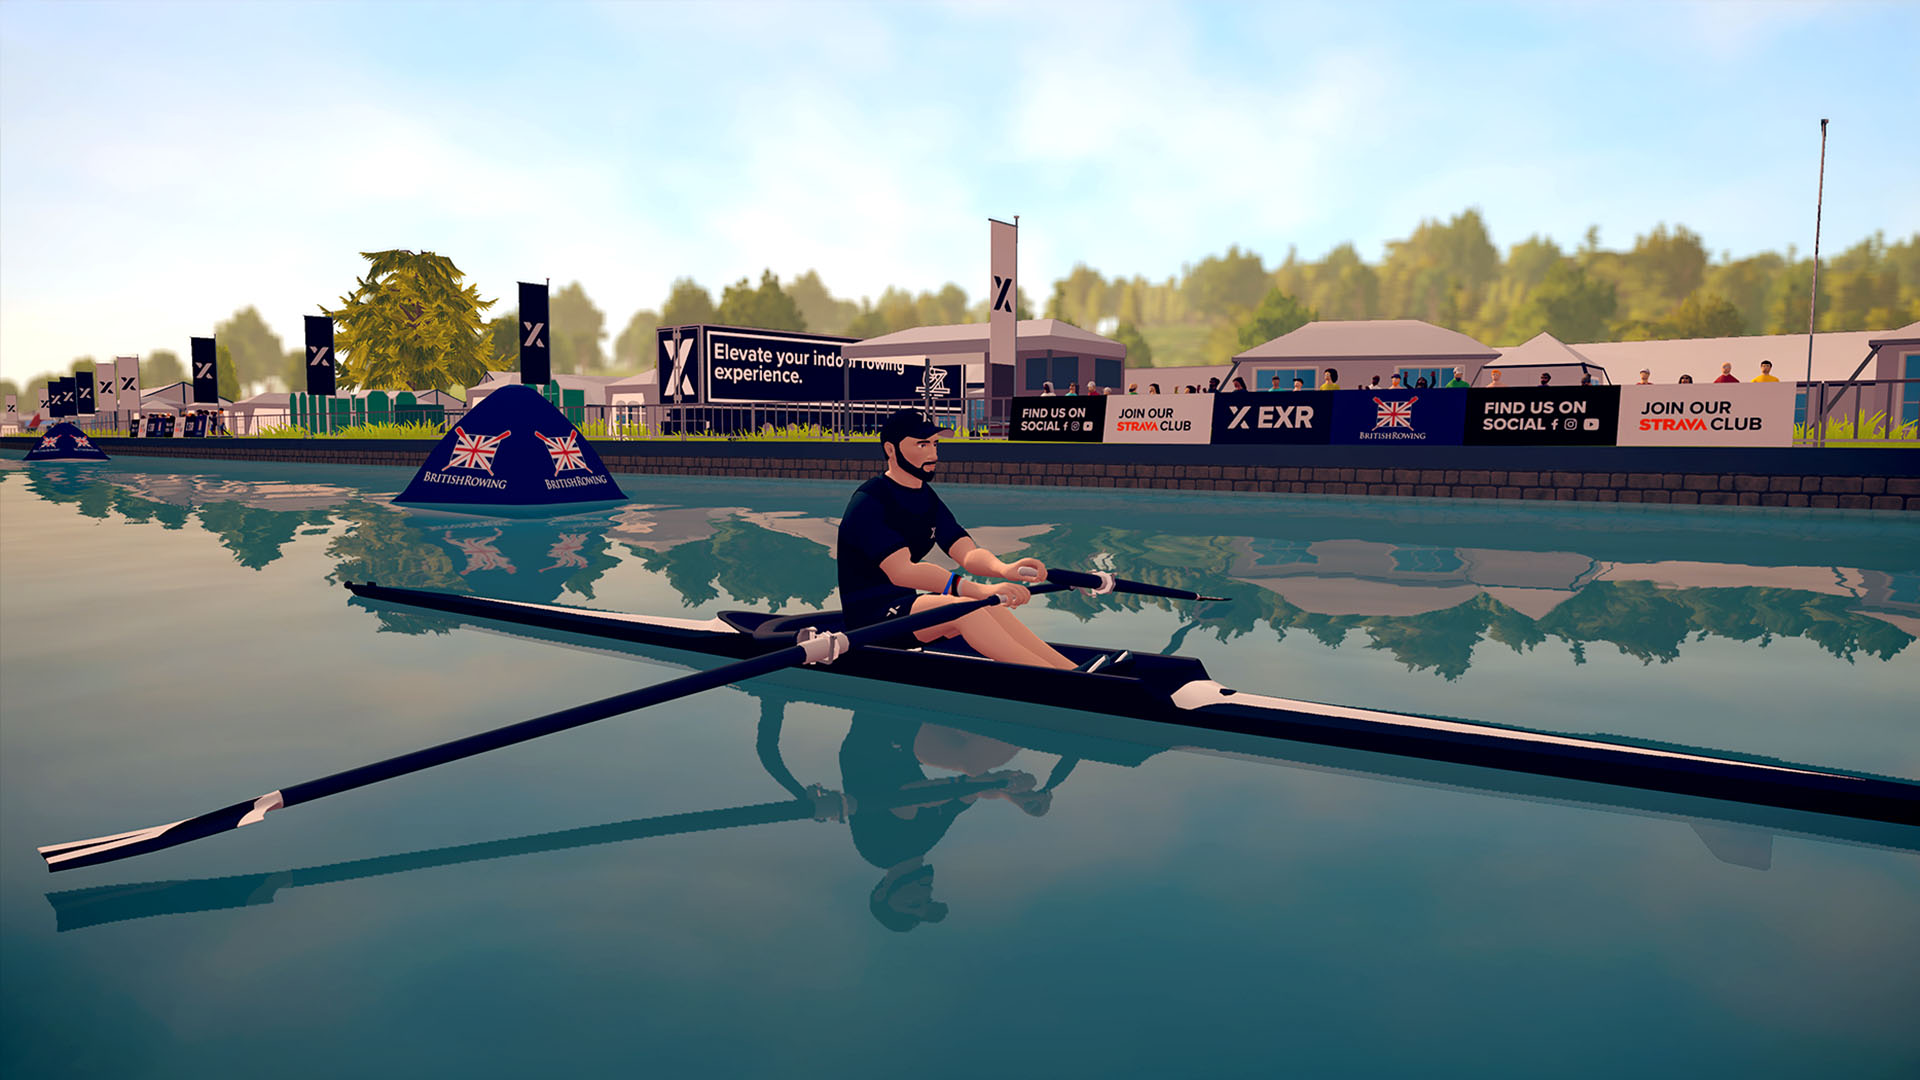 EXR British Rowing partnership